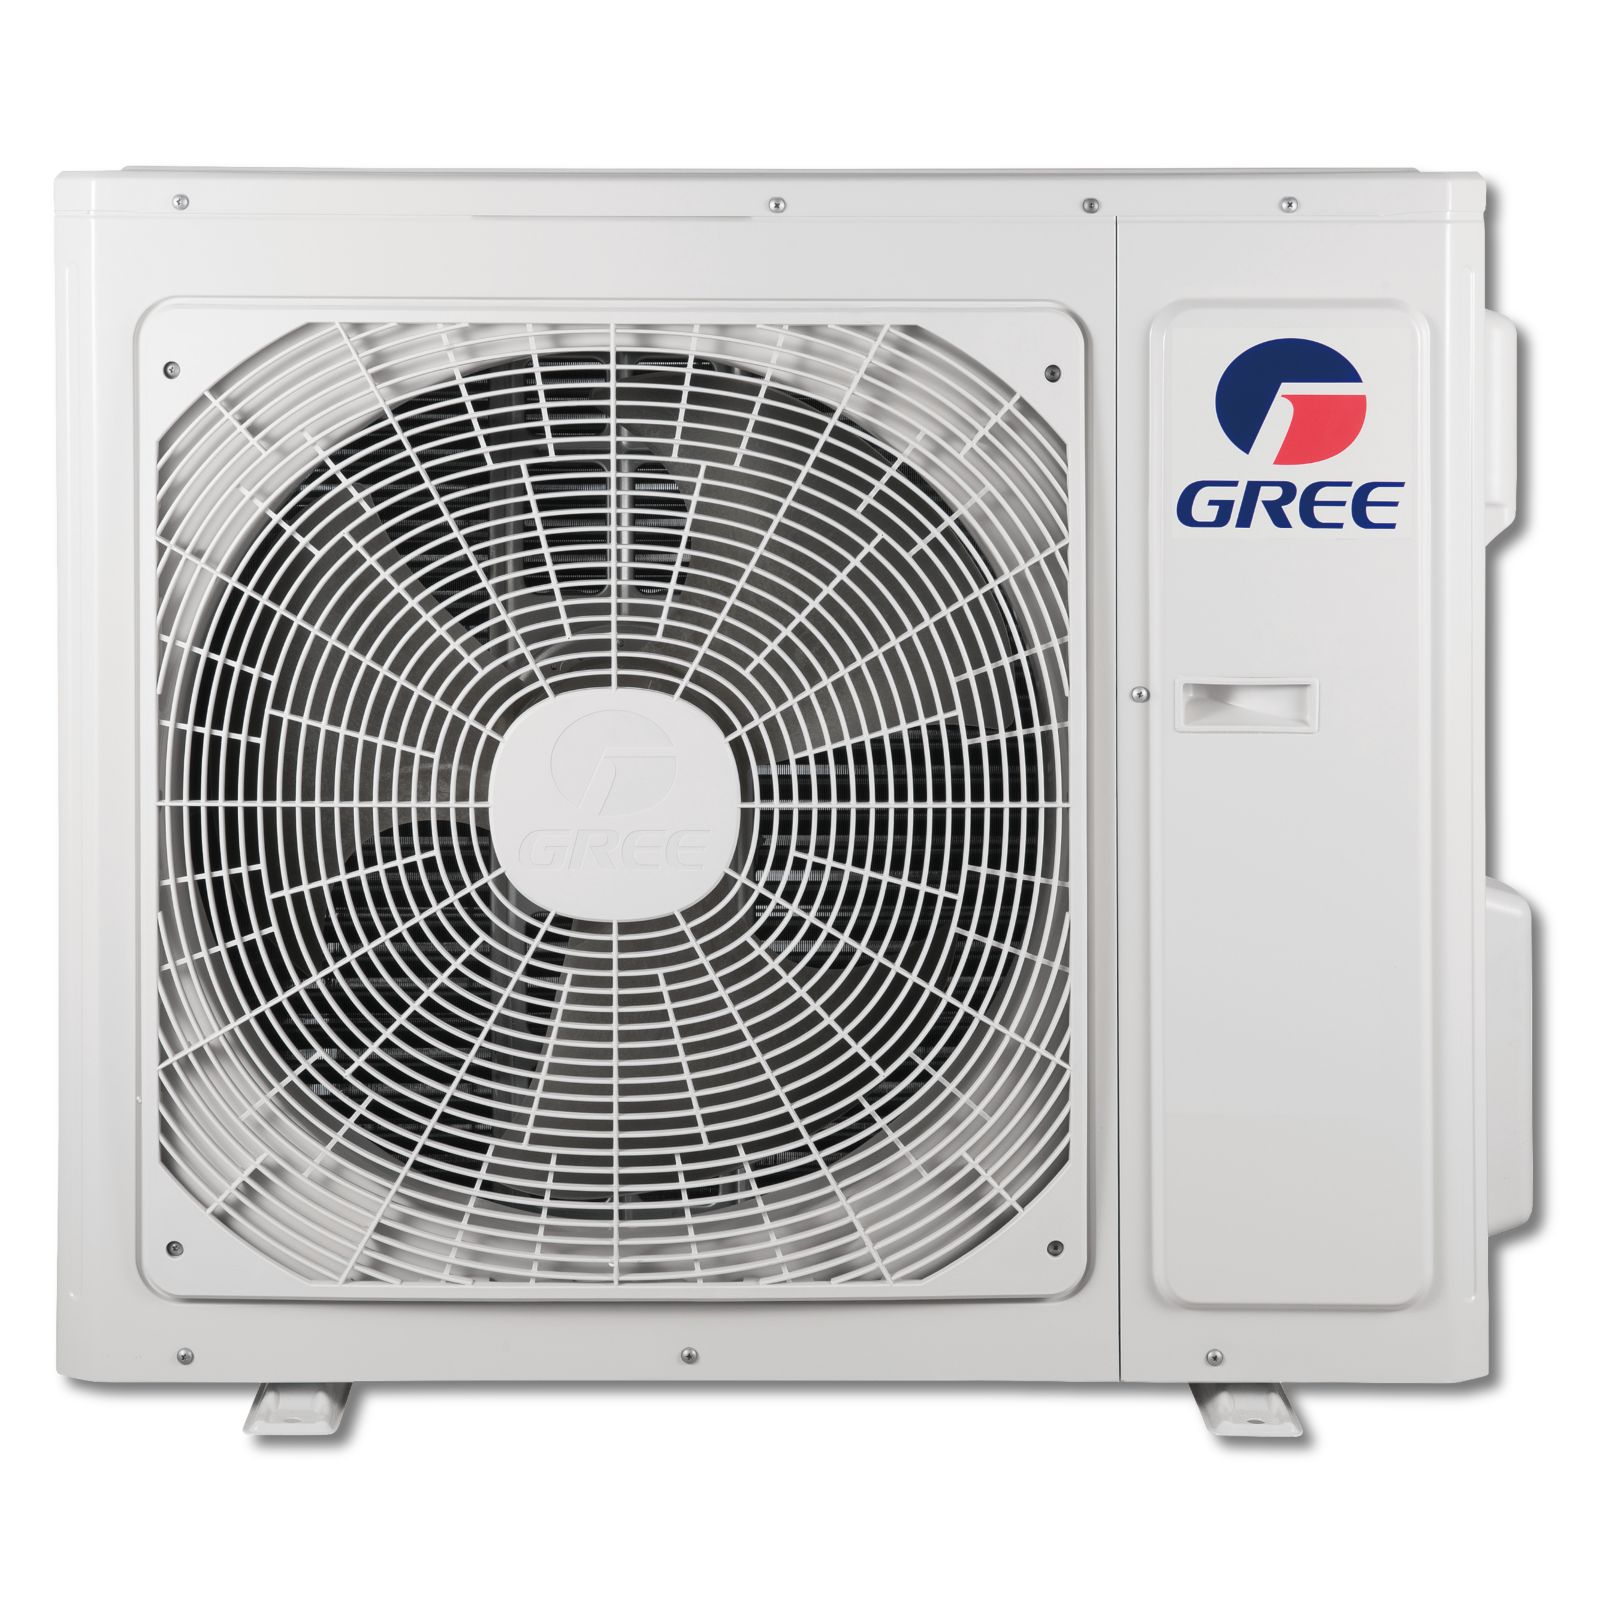 GREE VIR18HP230V1AO - Vireo 18,000 BTU Wall Mounted Inverter Heat Pump Outdoor Unit